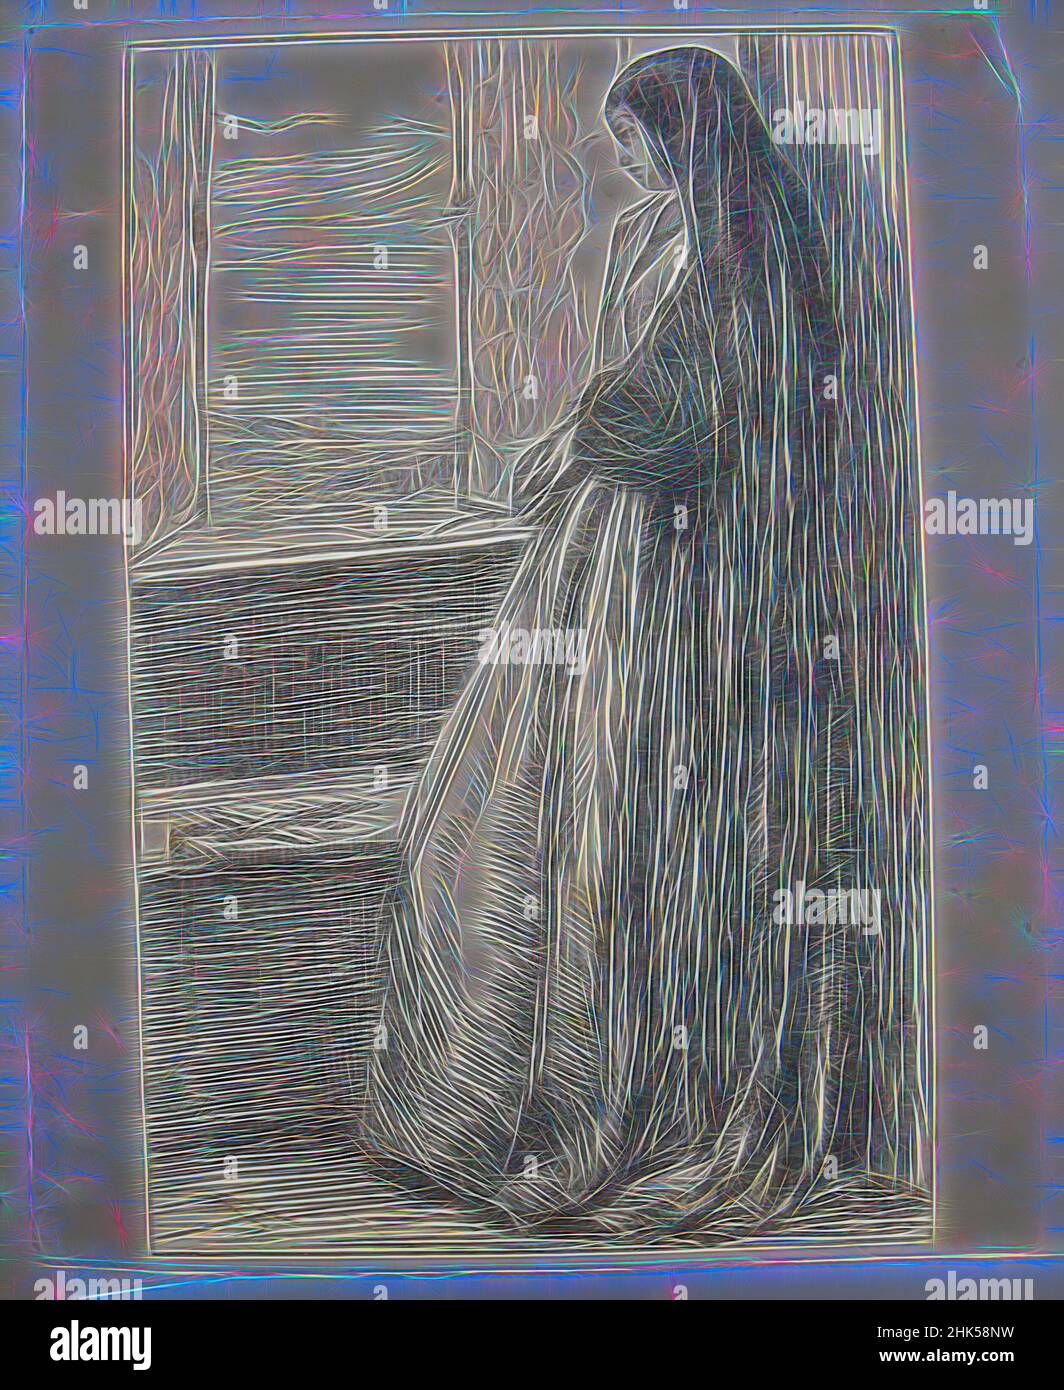 Inspiriert von Count Burckhardt, James Abbott McNeill Whistler, Amerikaner, 1834-1903, Holzstich auf Japan-Papier, n.d., Blatt: 6 7/16 x 5 1/8 Zoll, 16,4 x 13 cm, neu gestaltet von Artotop. Klassische Kunst neu erfunden mit einem modernen Twist. Design von warmen fröhlichen Leuchten der Helligkeit und Lichtstrahl Strahlkraft. Fotografie inspiriert von Surrealismus und Futurismus, umarmt dynamische Energie der modernen Technologie, Bewegung, Geschwindigkeit und Kultur zu revolutionieren Stockfoto